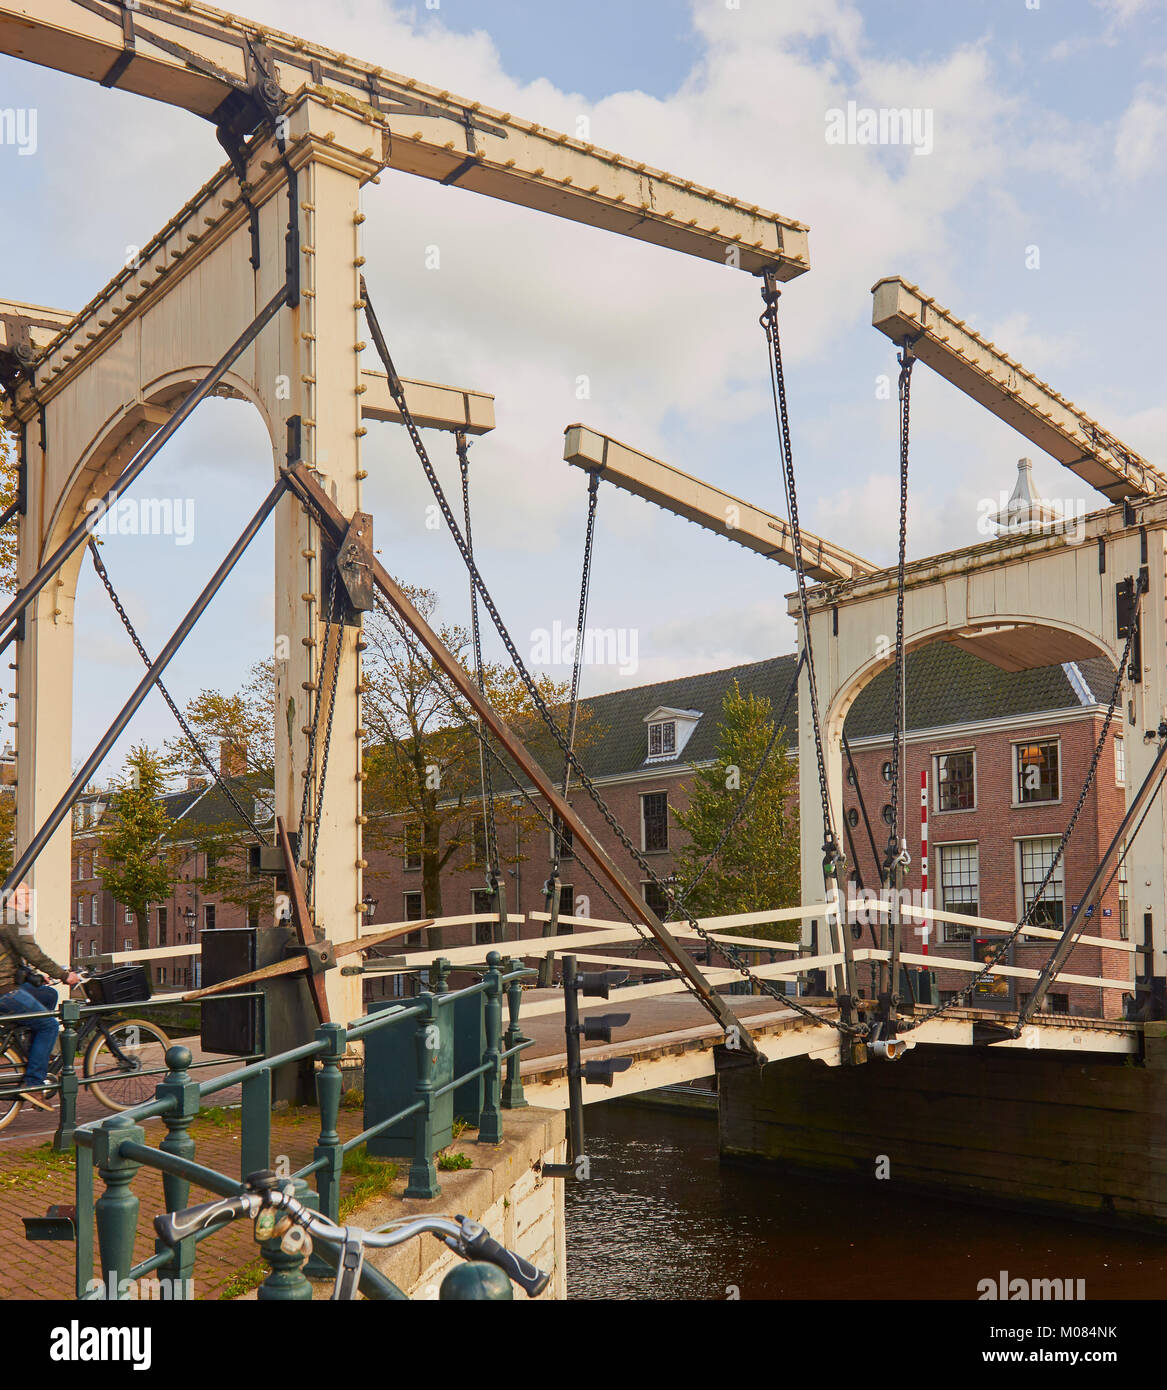 Walter Suskindbrug ein doppelter Zugbrücke, Amsterdam, Niederlande. Nachdem der deutsche Jude, 600 jüdische Kinder des Holocaust Flucht geholfen benannt. Stockfoto